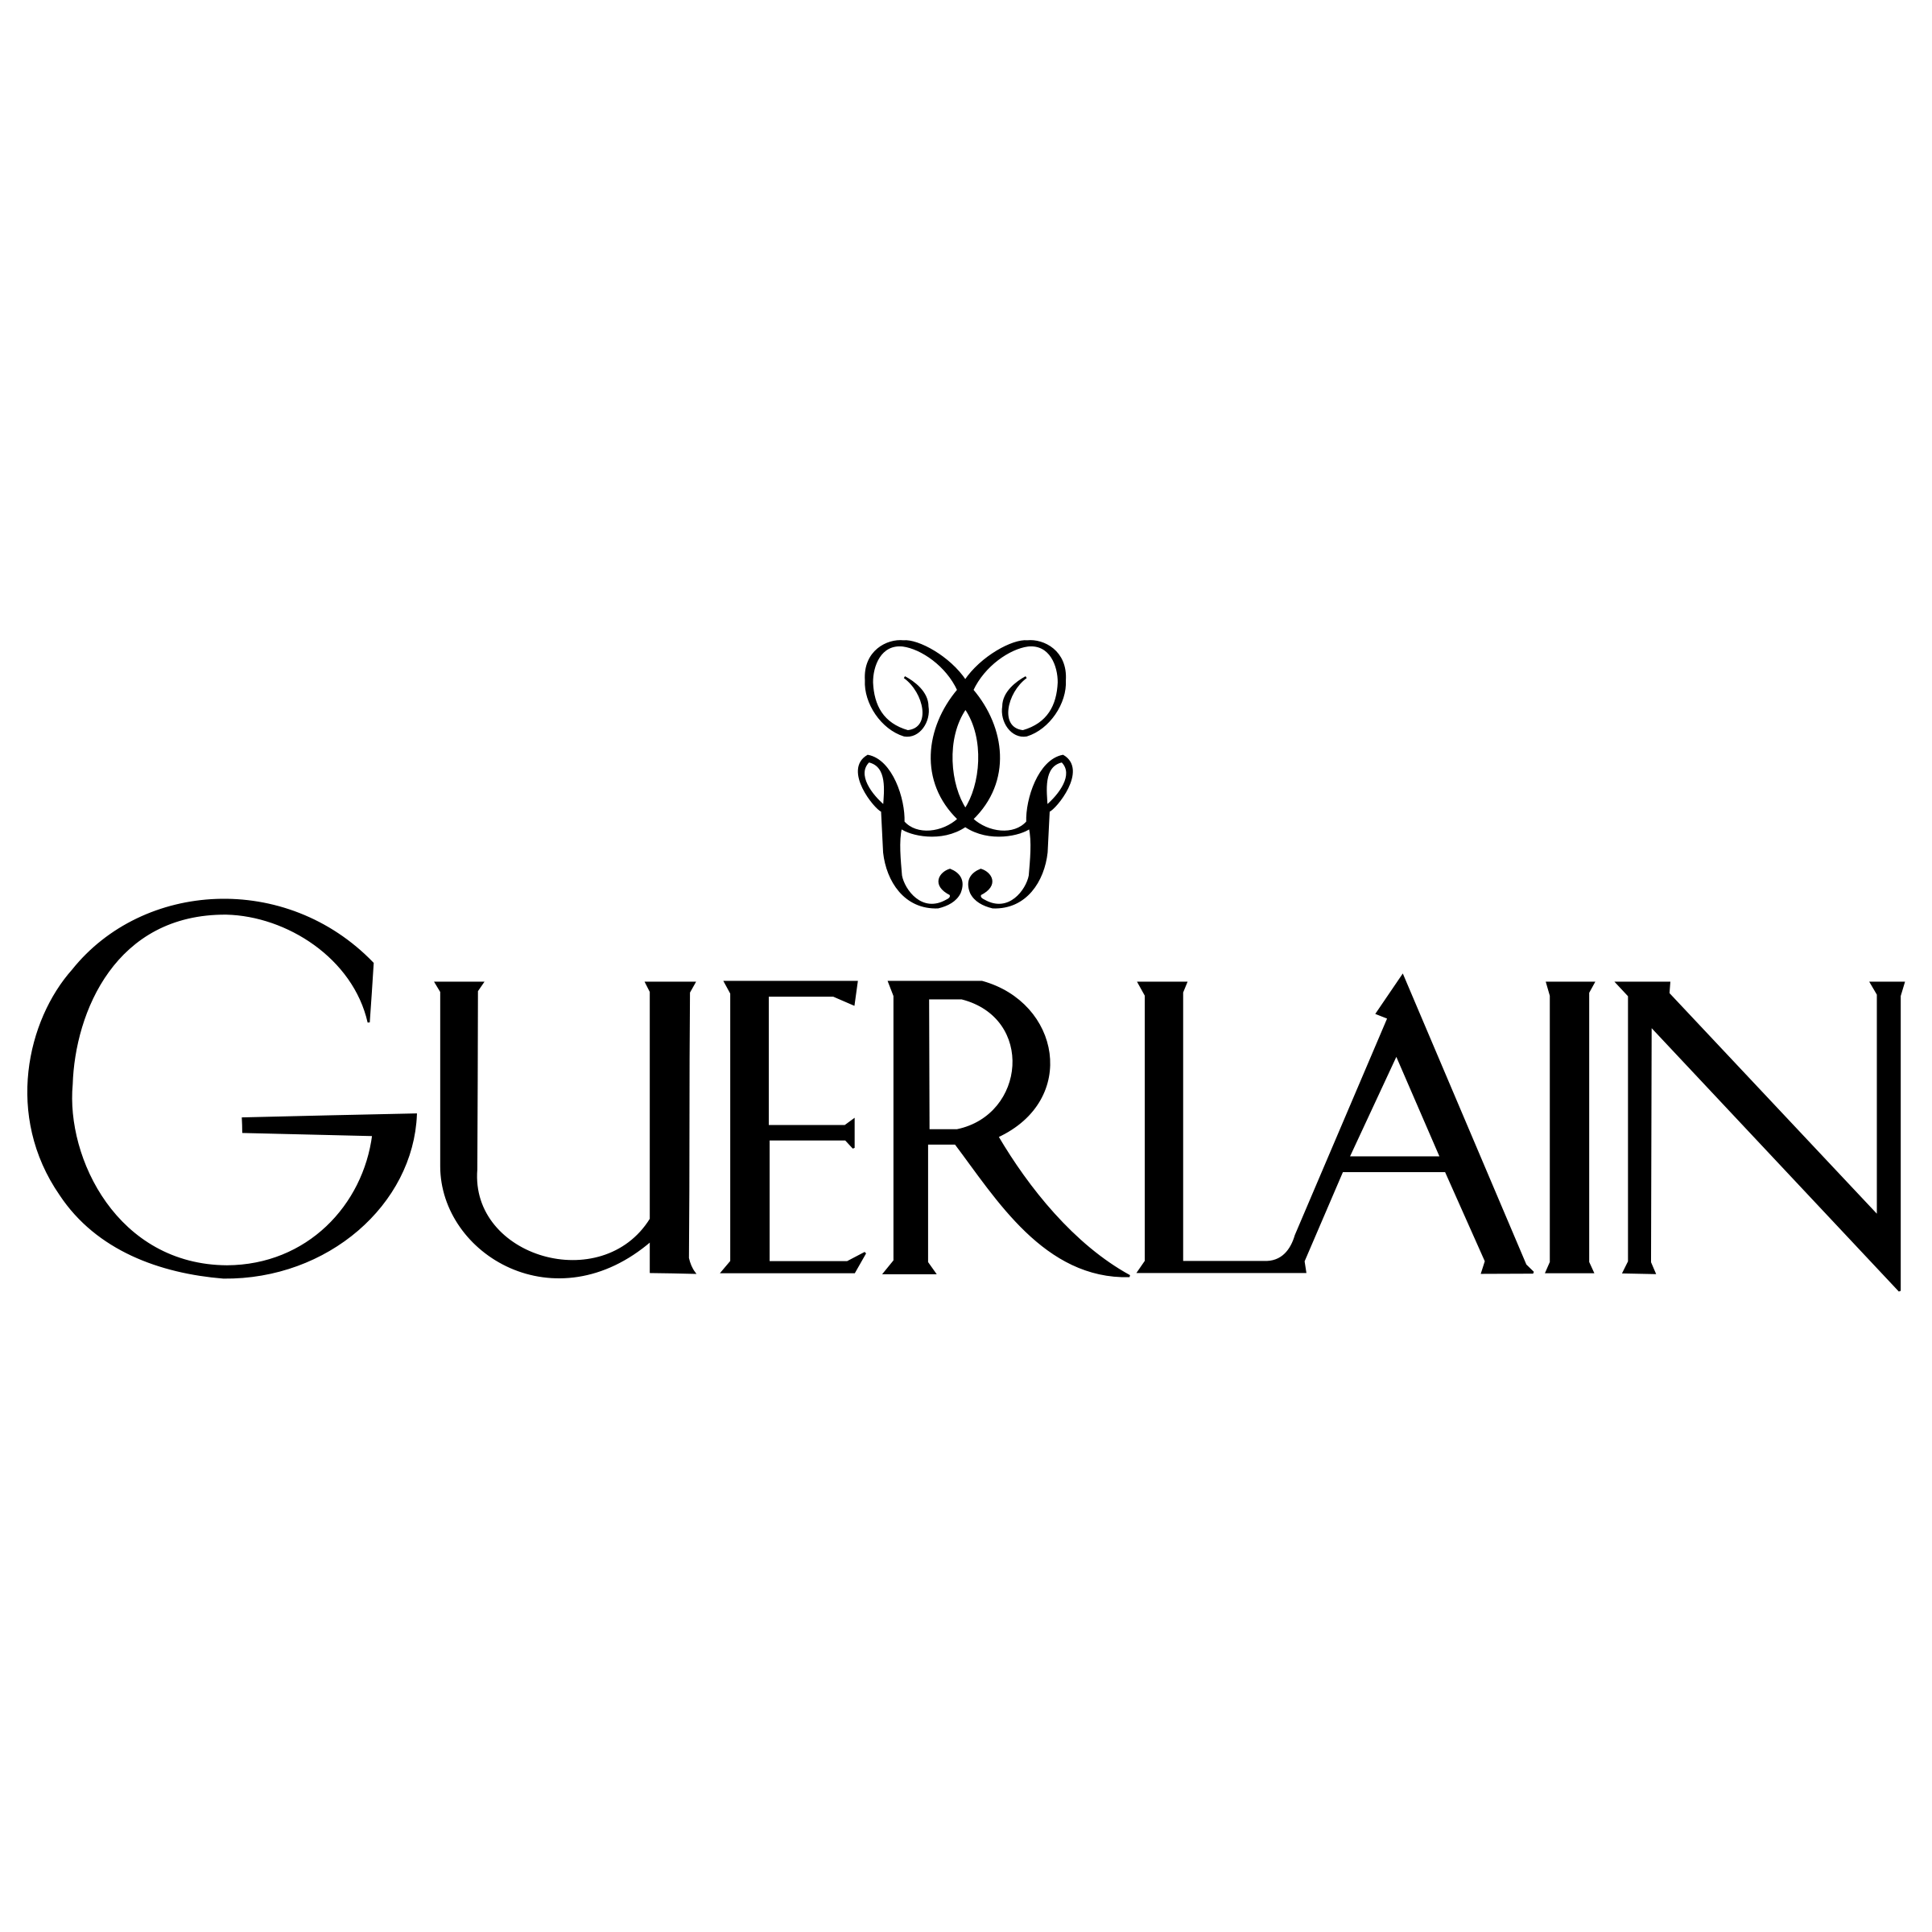 guerlain-1-logo-png-transparent.png